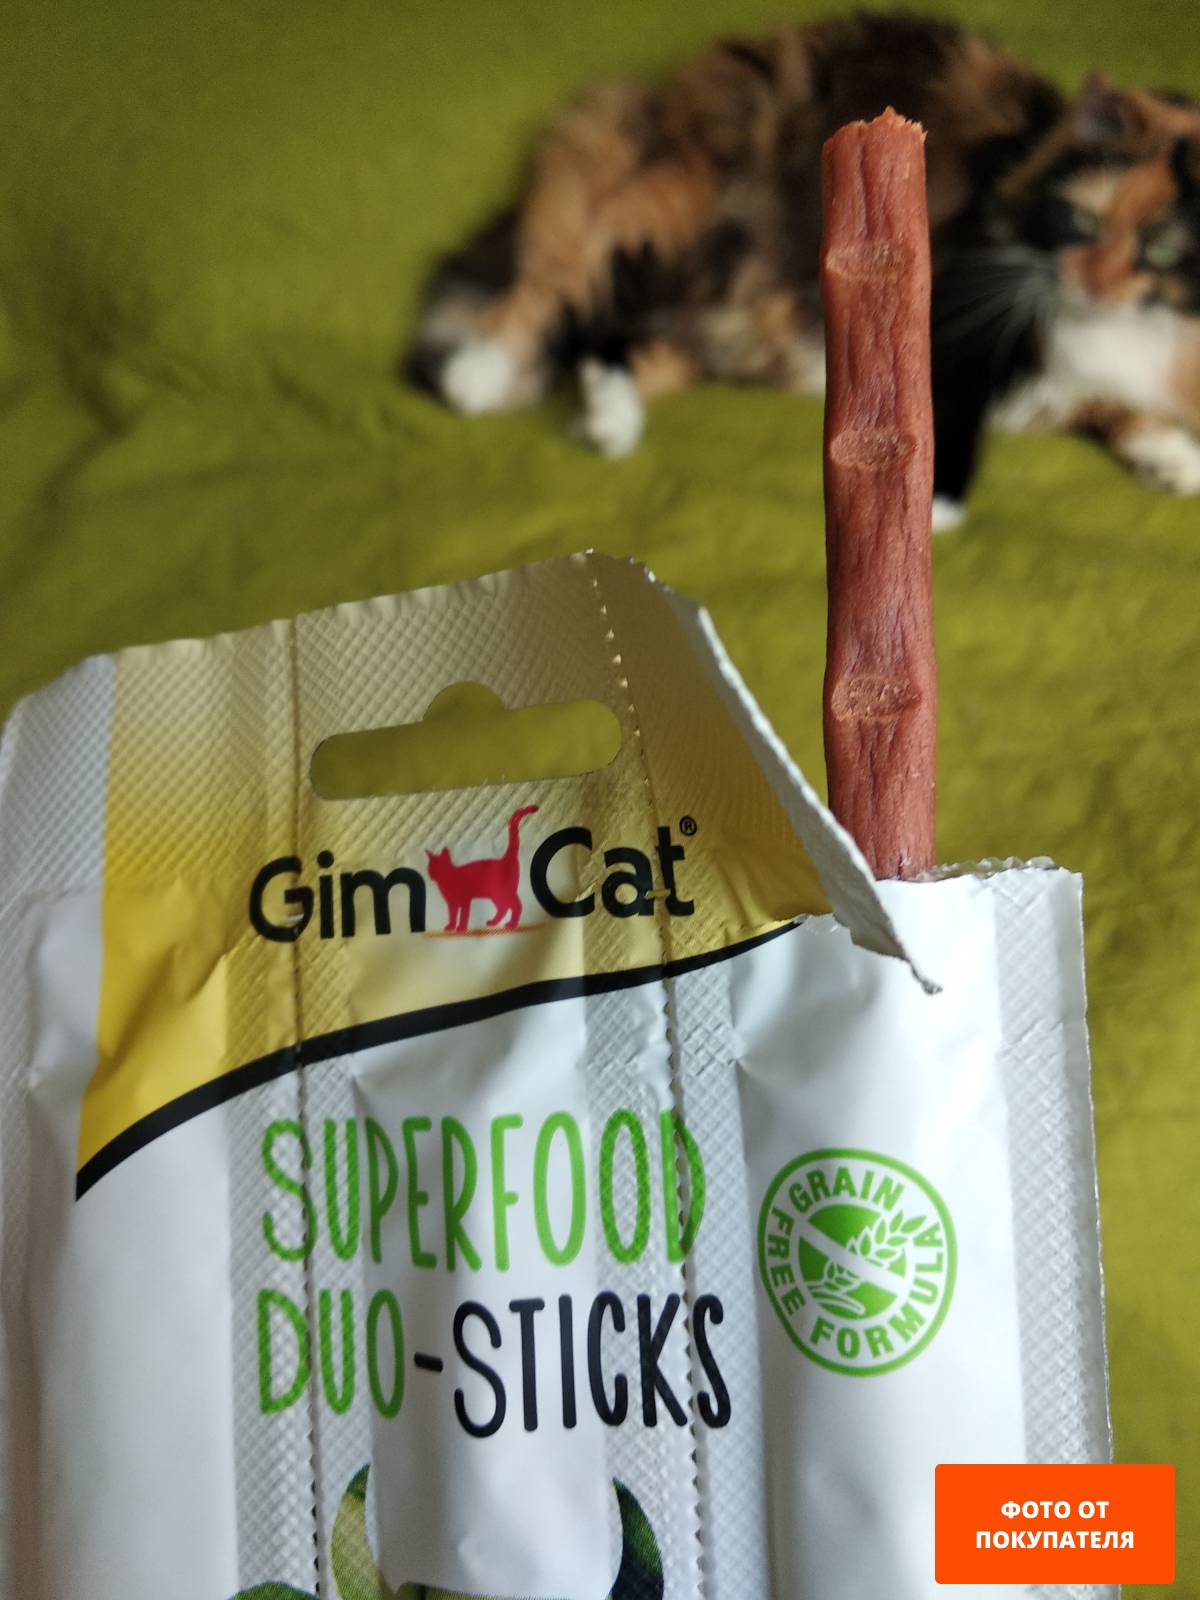 Лакомство для кошек GIMBORN GimCat Superfood говядина и яблоко 3 штуки - Фото 3